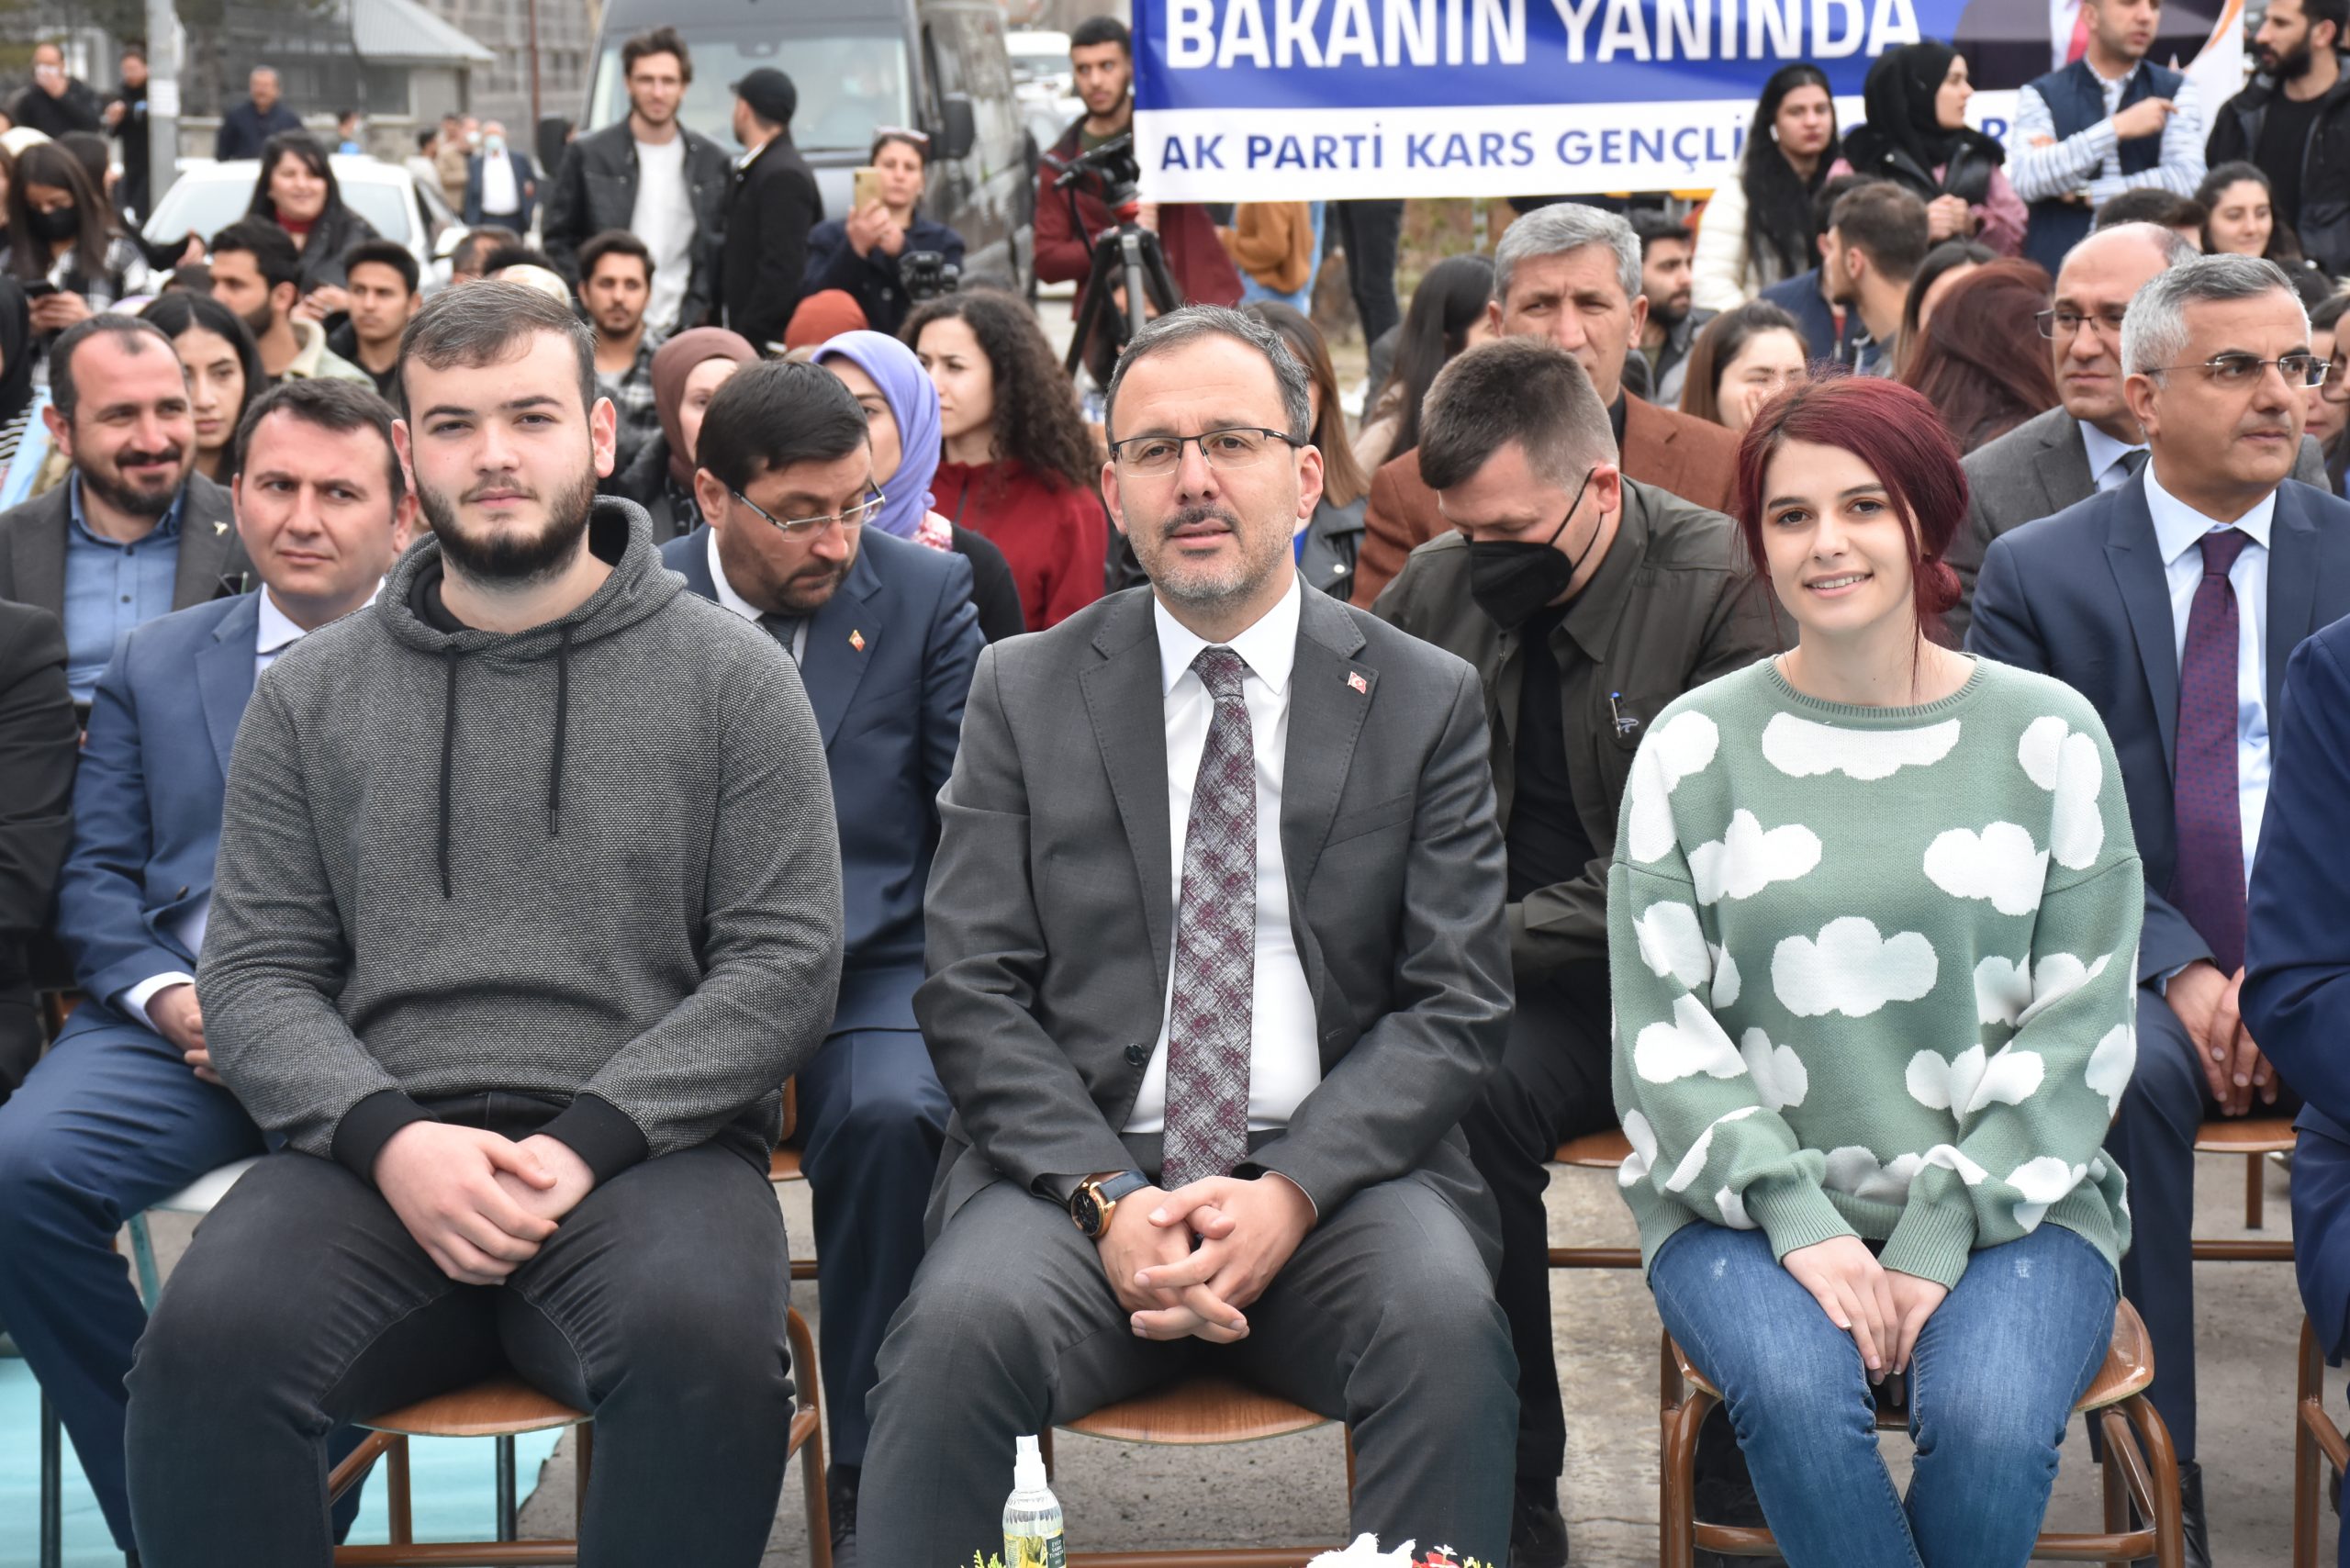 Gençlik ve Spor Bakanı Kasapoğlu, Kars Gençlik Merkezi’nin açılışında konuştu: